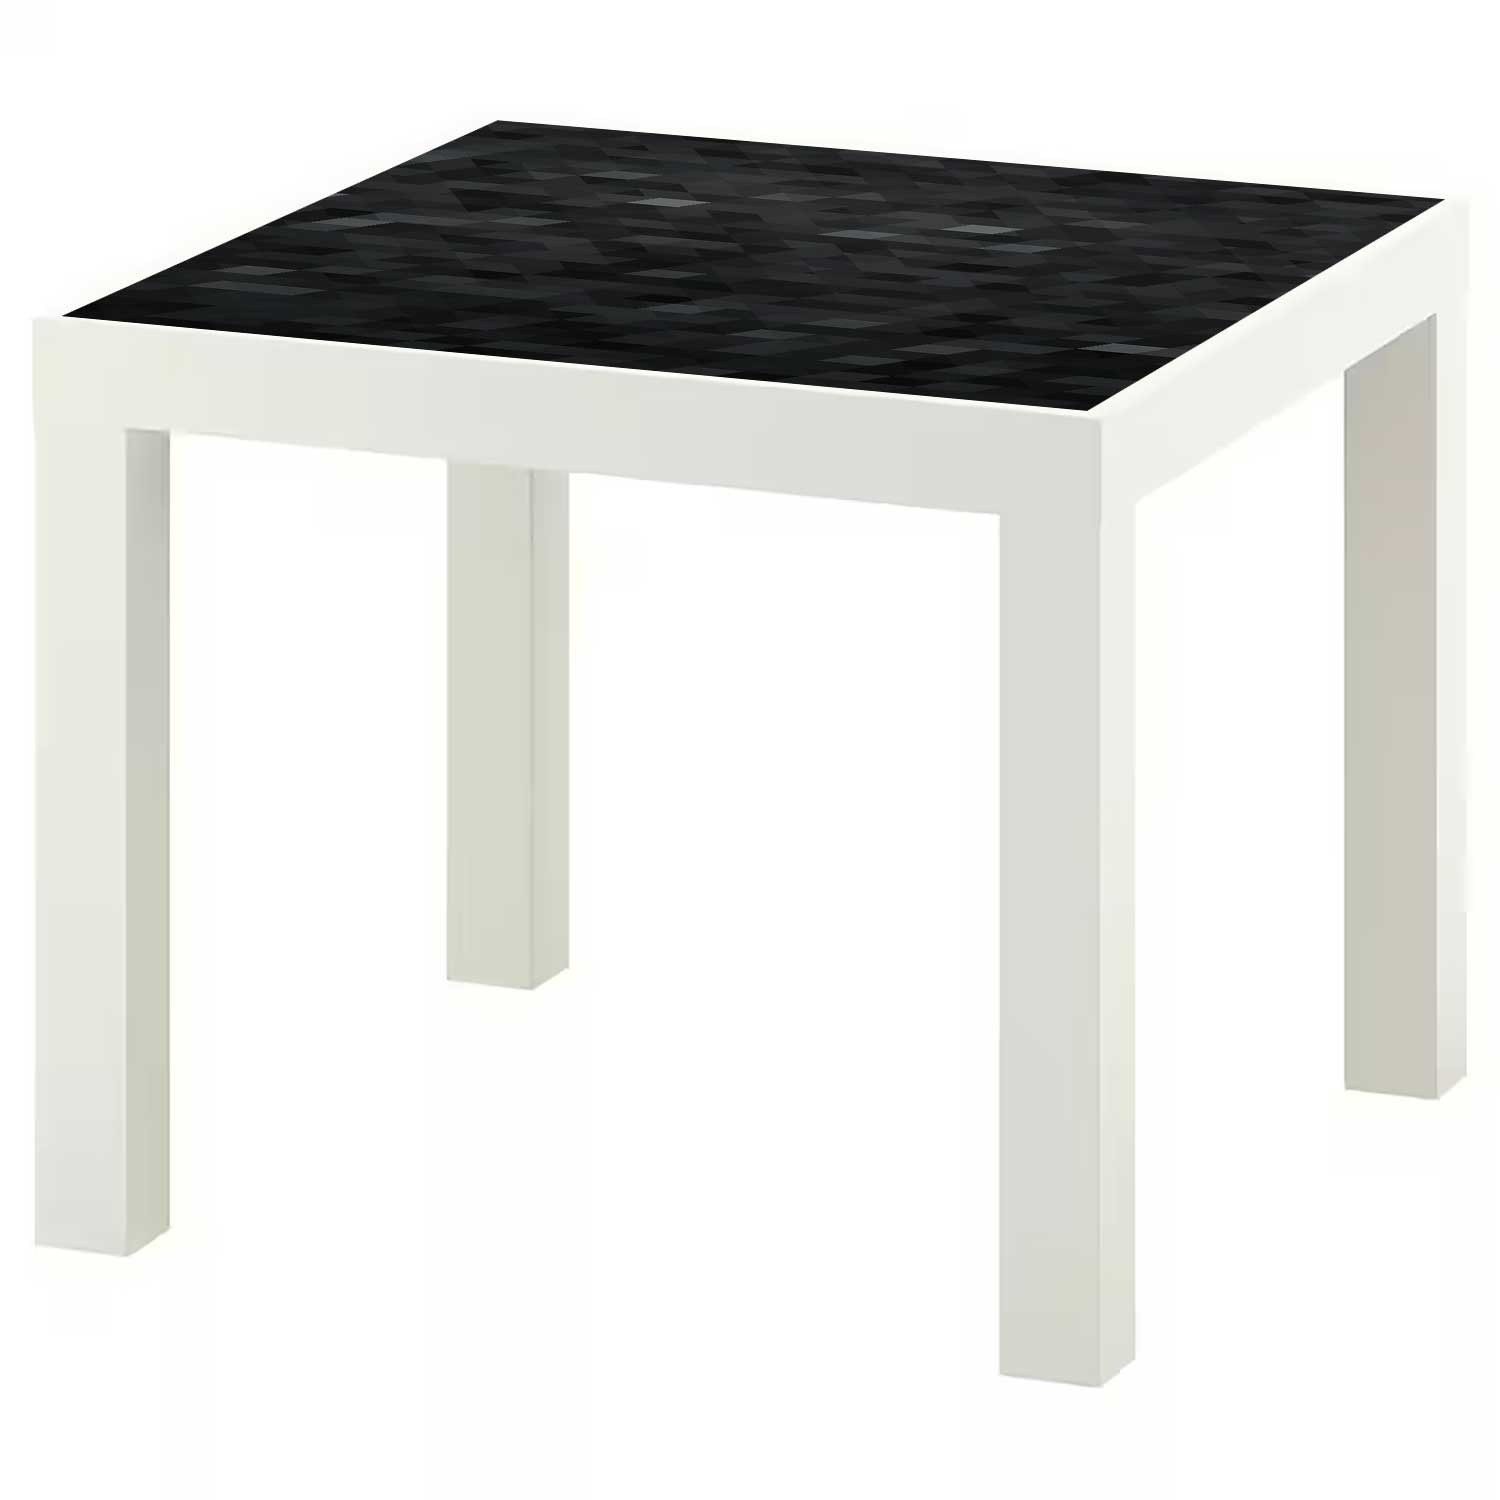 Möbelfolie für IKEA Lack Tisch 55x55 cm 'Modern Pixel'